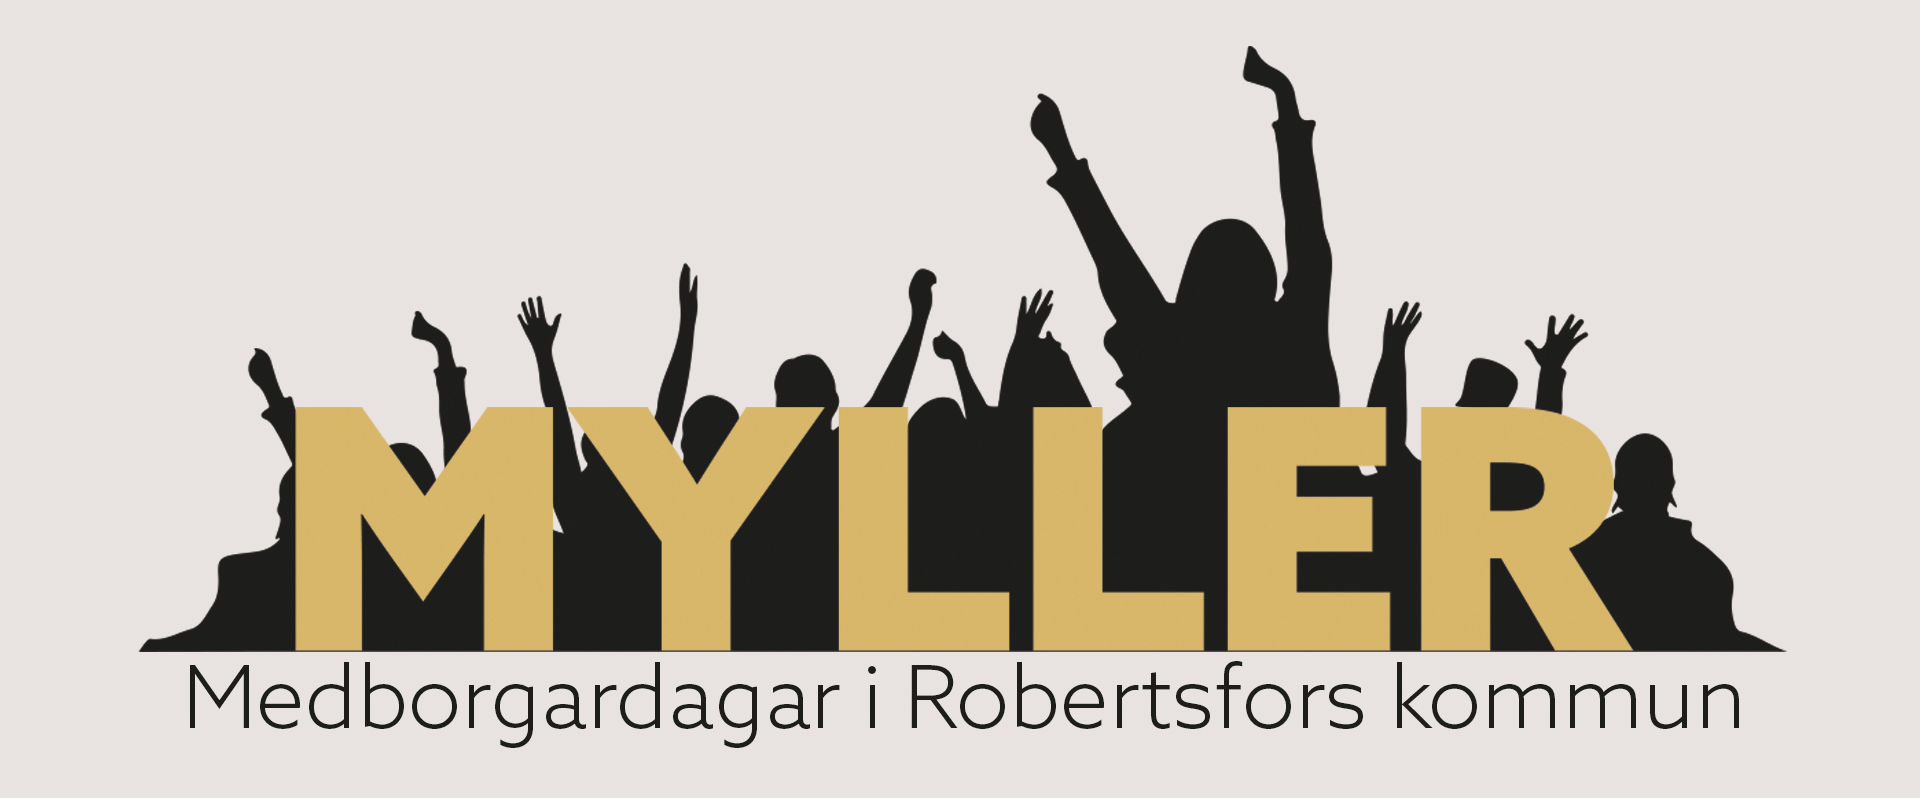 Logotyp Myller - undertext: Medborgardagar i Robertsfors kommun